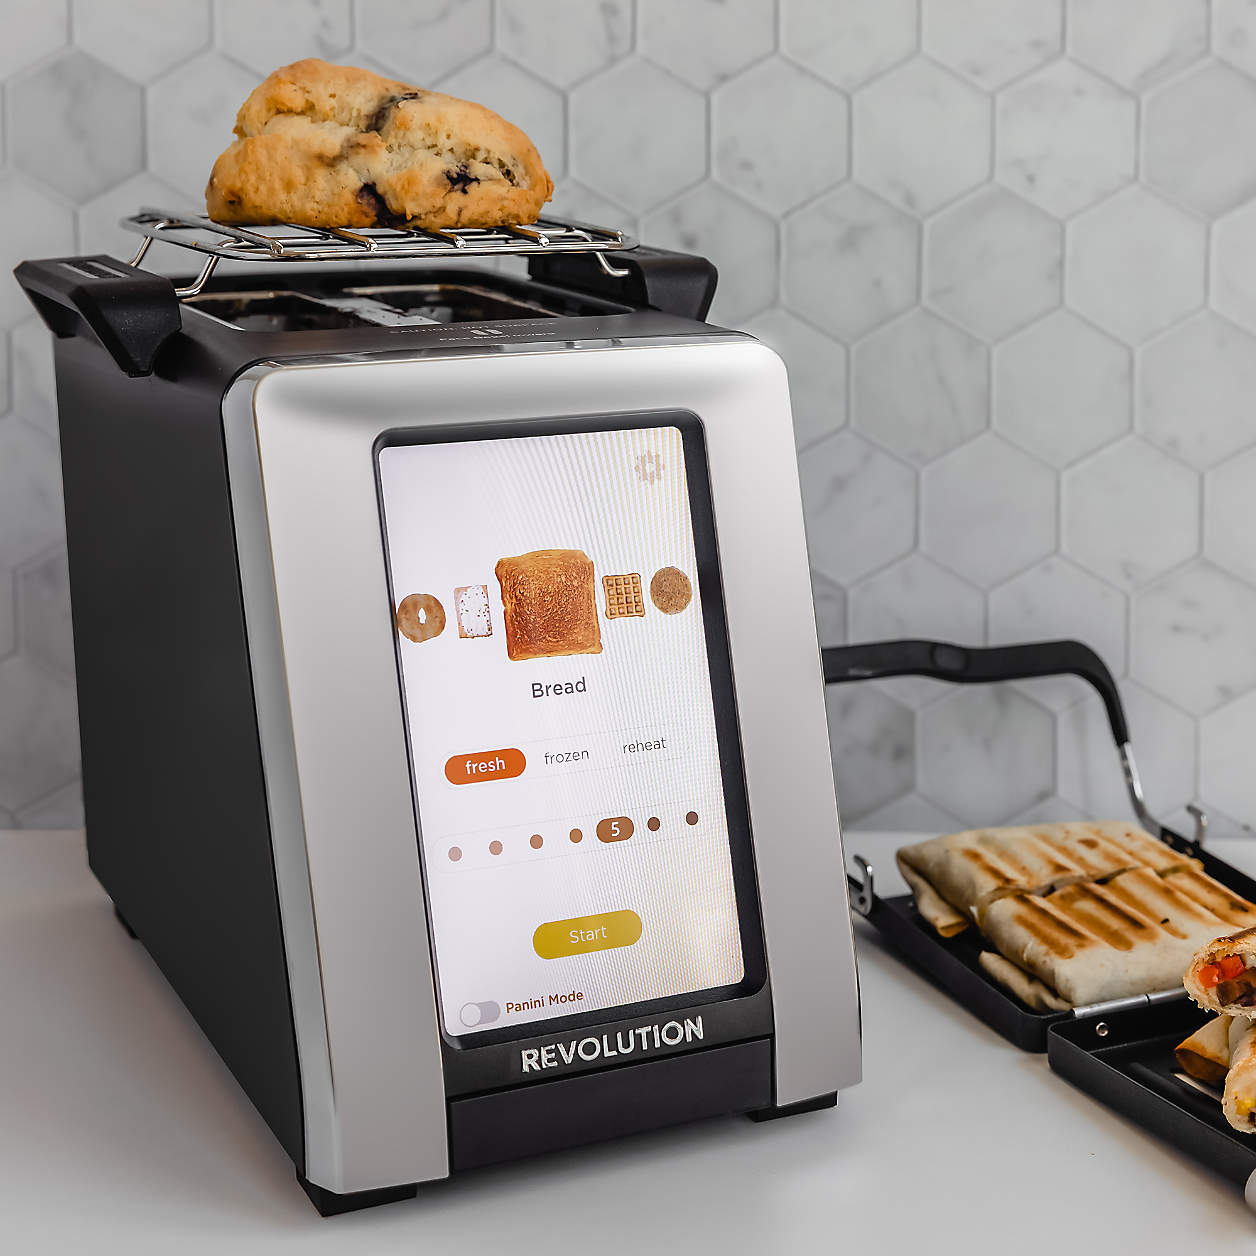 8 smart home appliances for smarter living - Deseret News